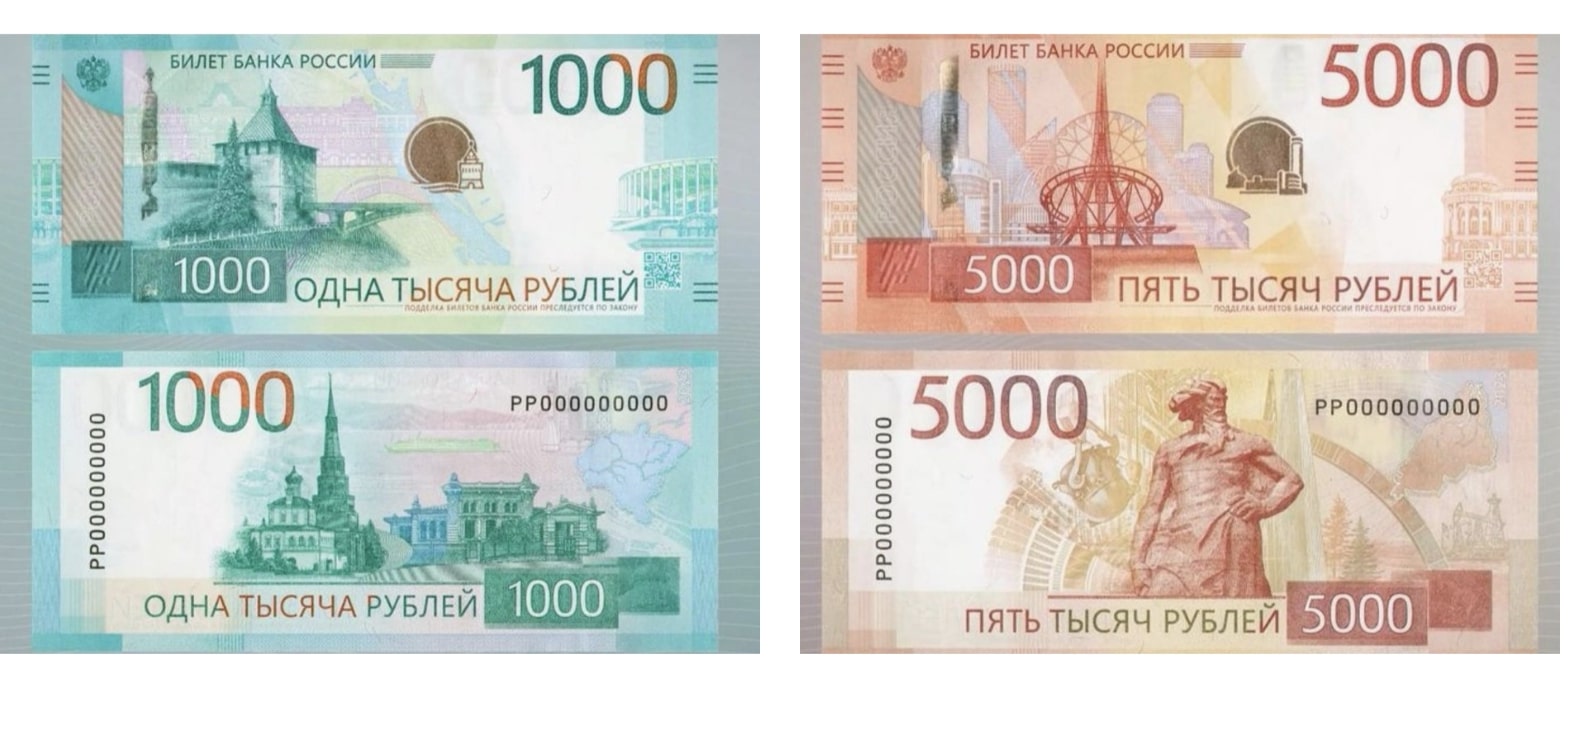 ЦБ показал новые купюры номиналом 1000 и 5000 рублей